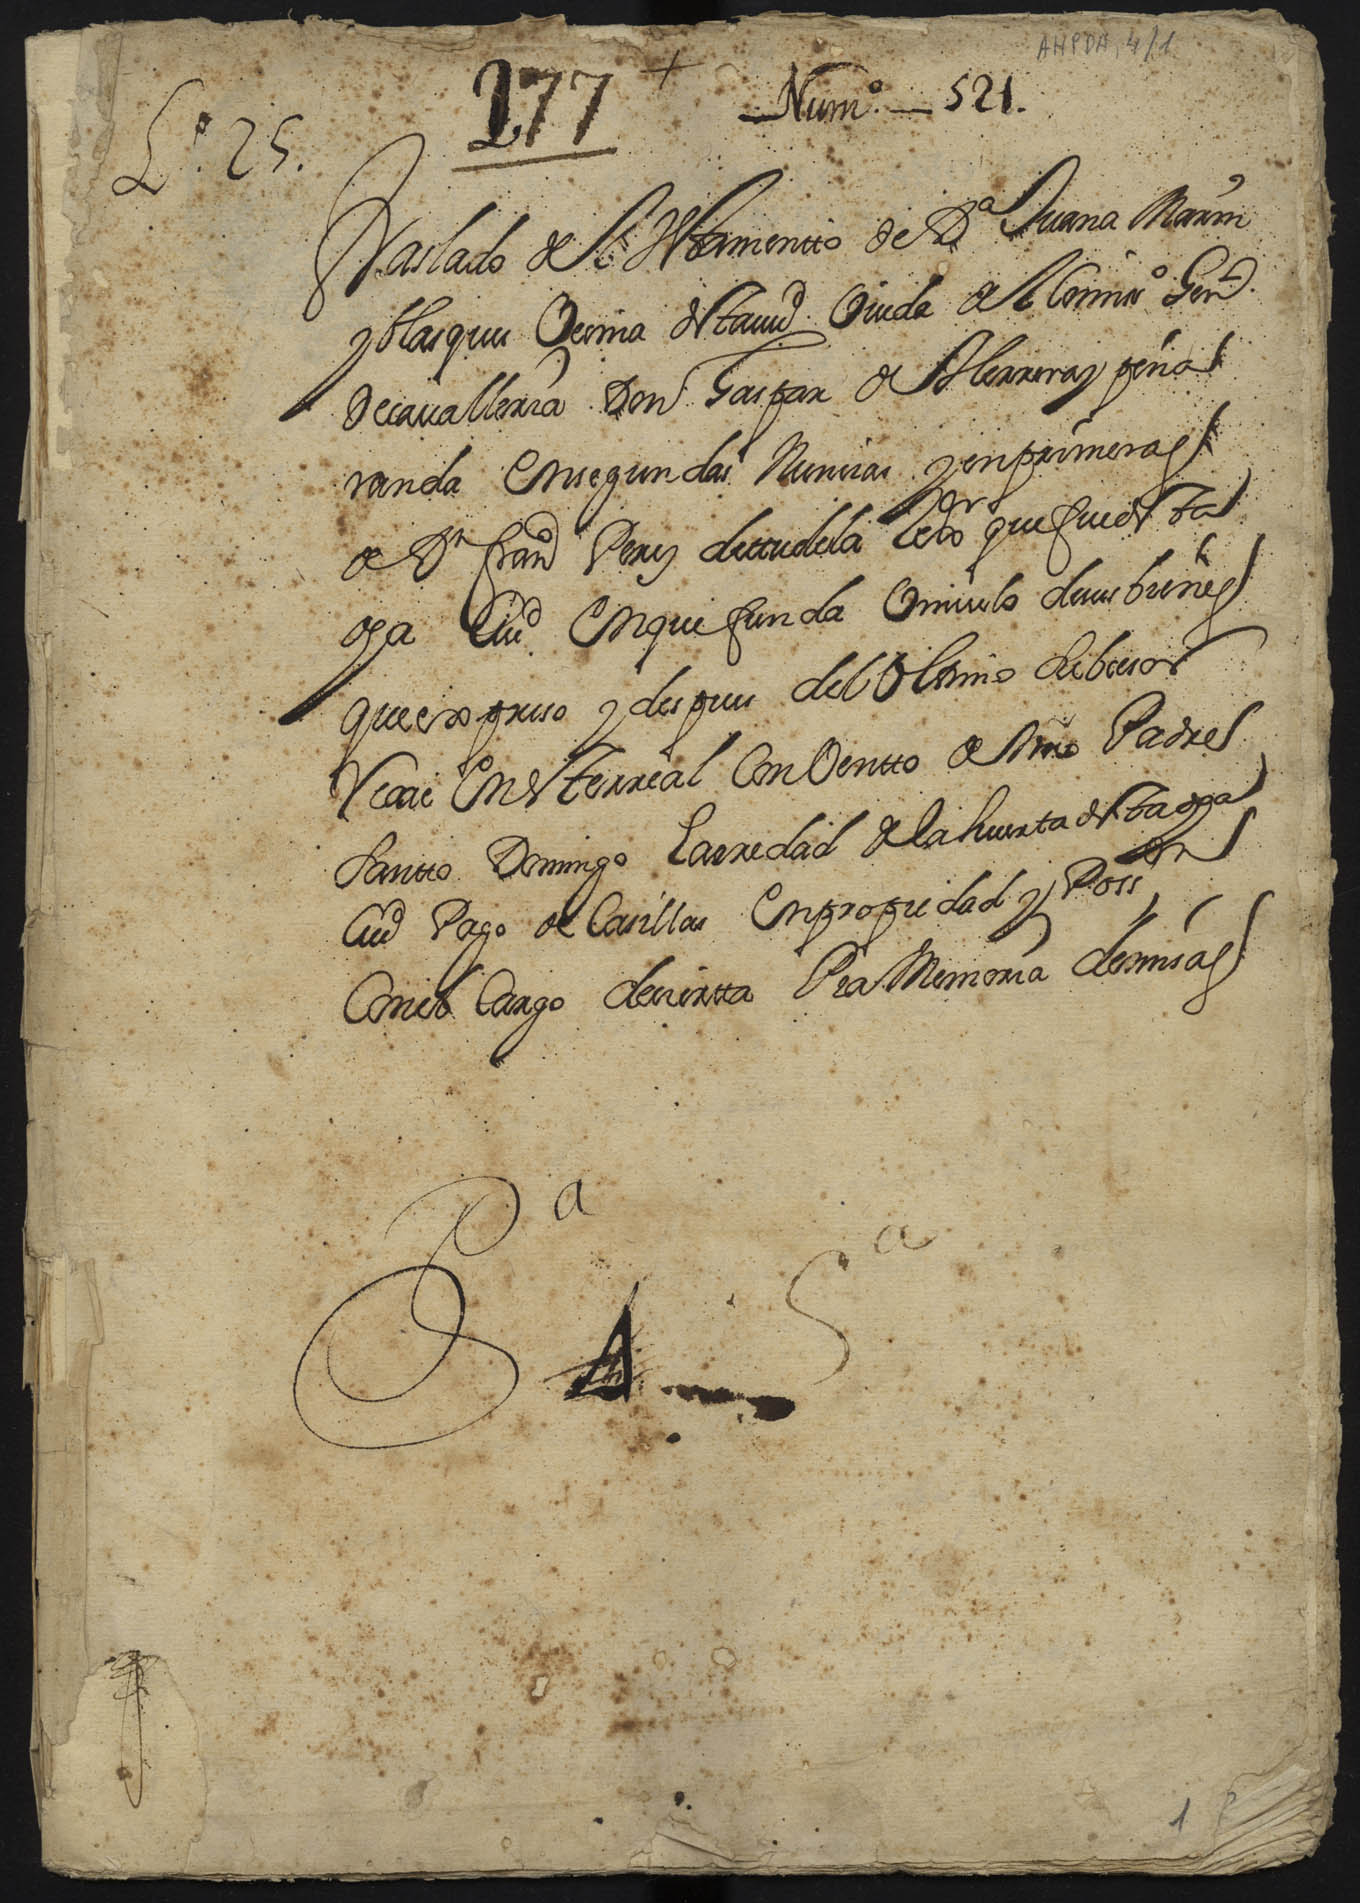 Traslado auténtico del testamento de Juana Marín Blázquez, vecina de Murcia, realizado ante el notario Baltasar Ruiz el 7 de abril de 1714.